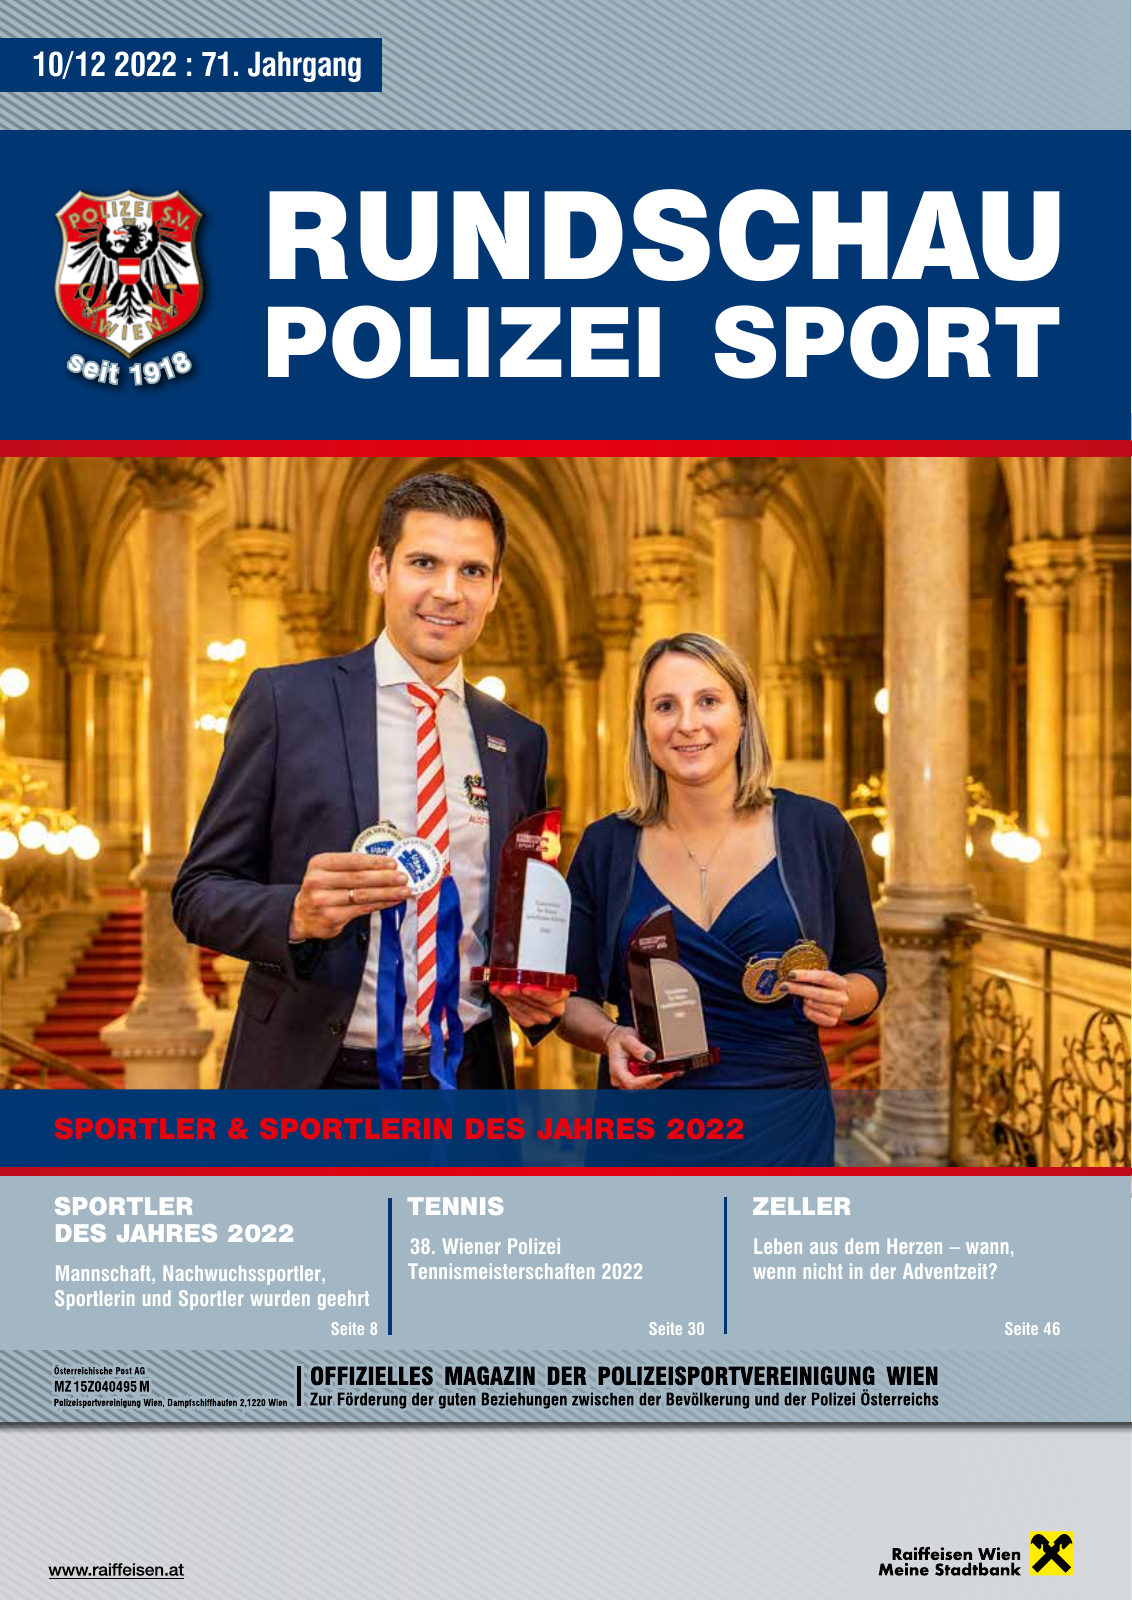 Vorschau Rundschau Polizei Sport 10-12/2022 Seite 1